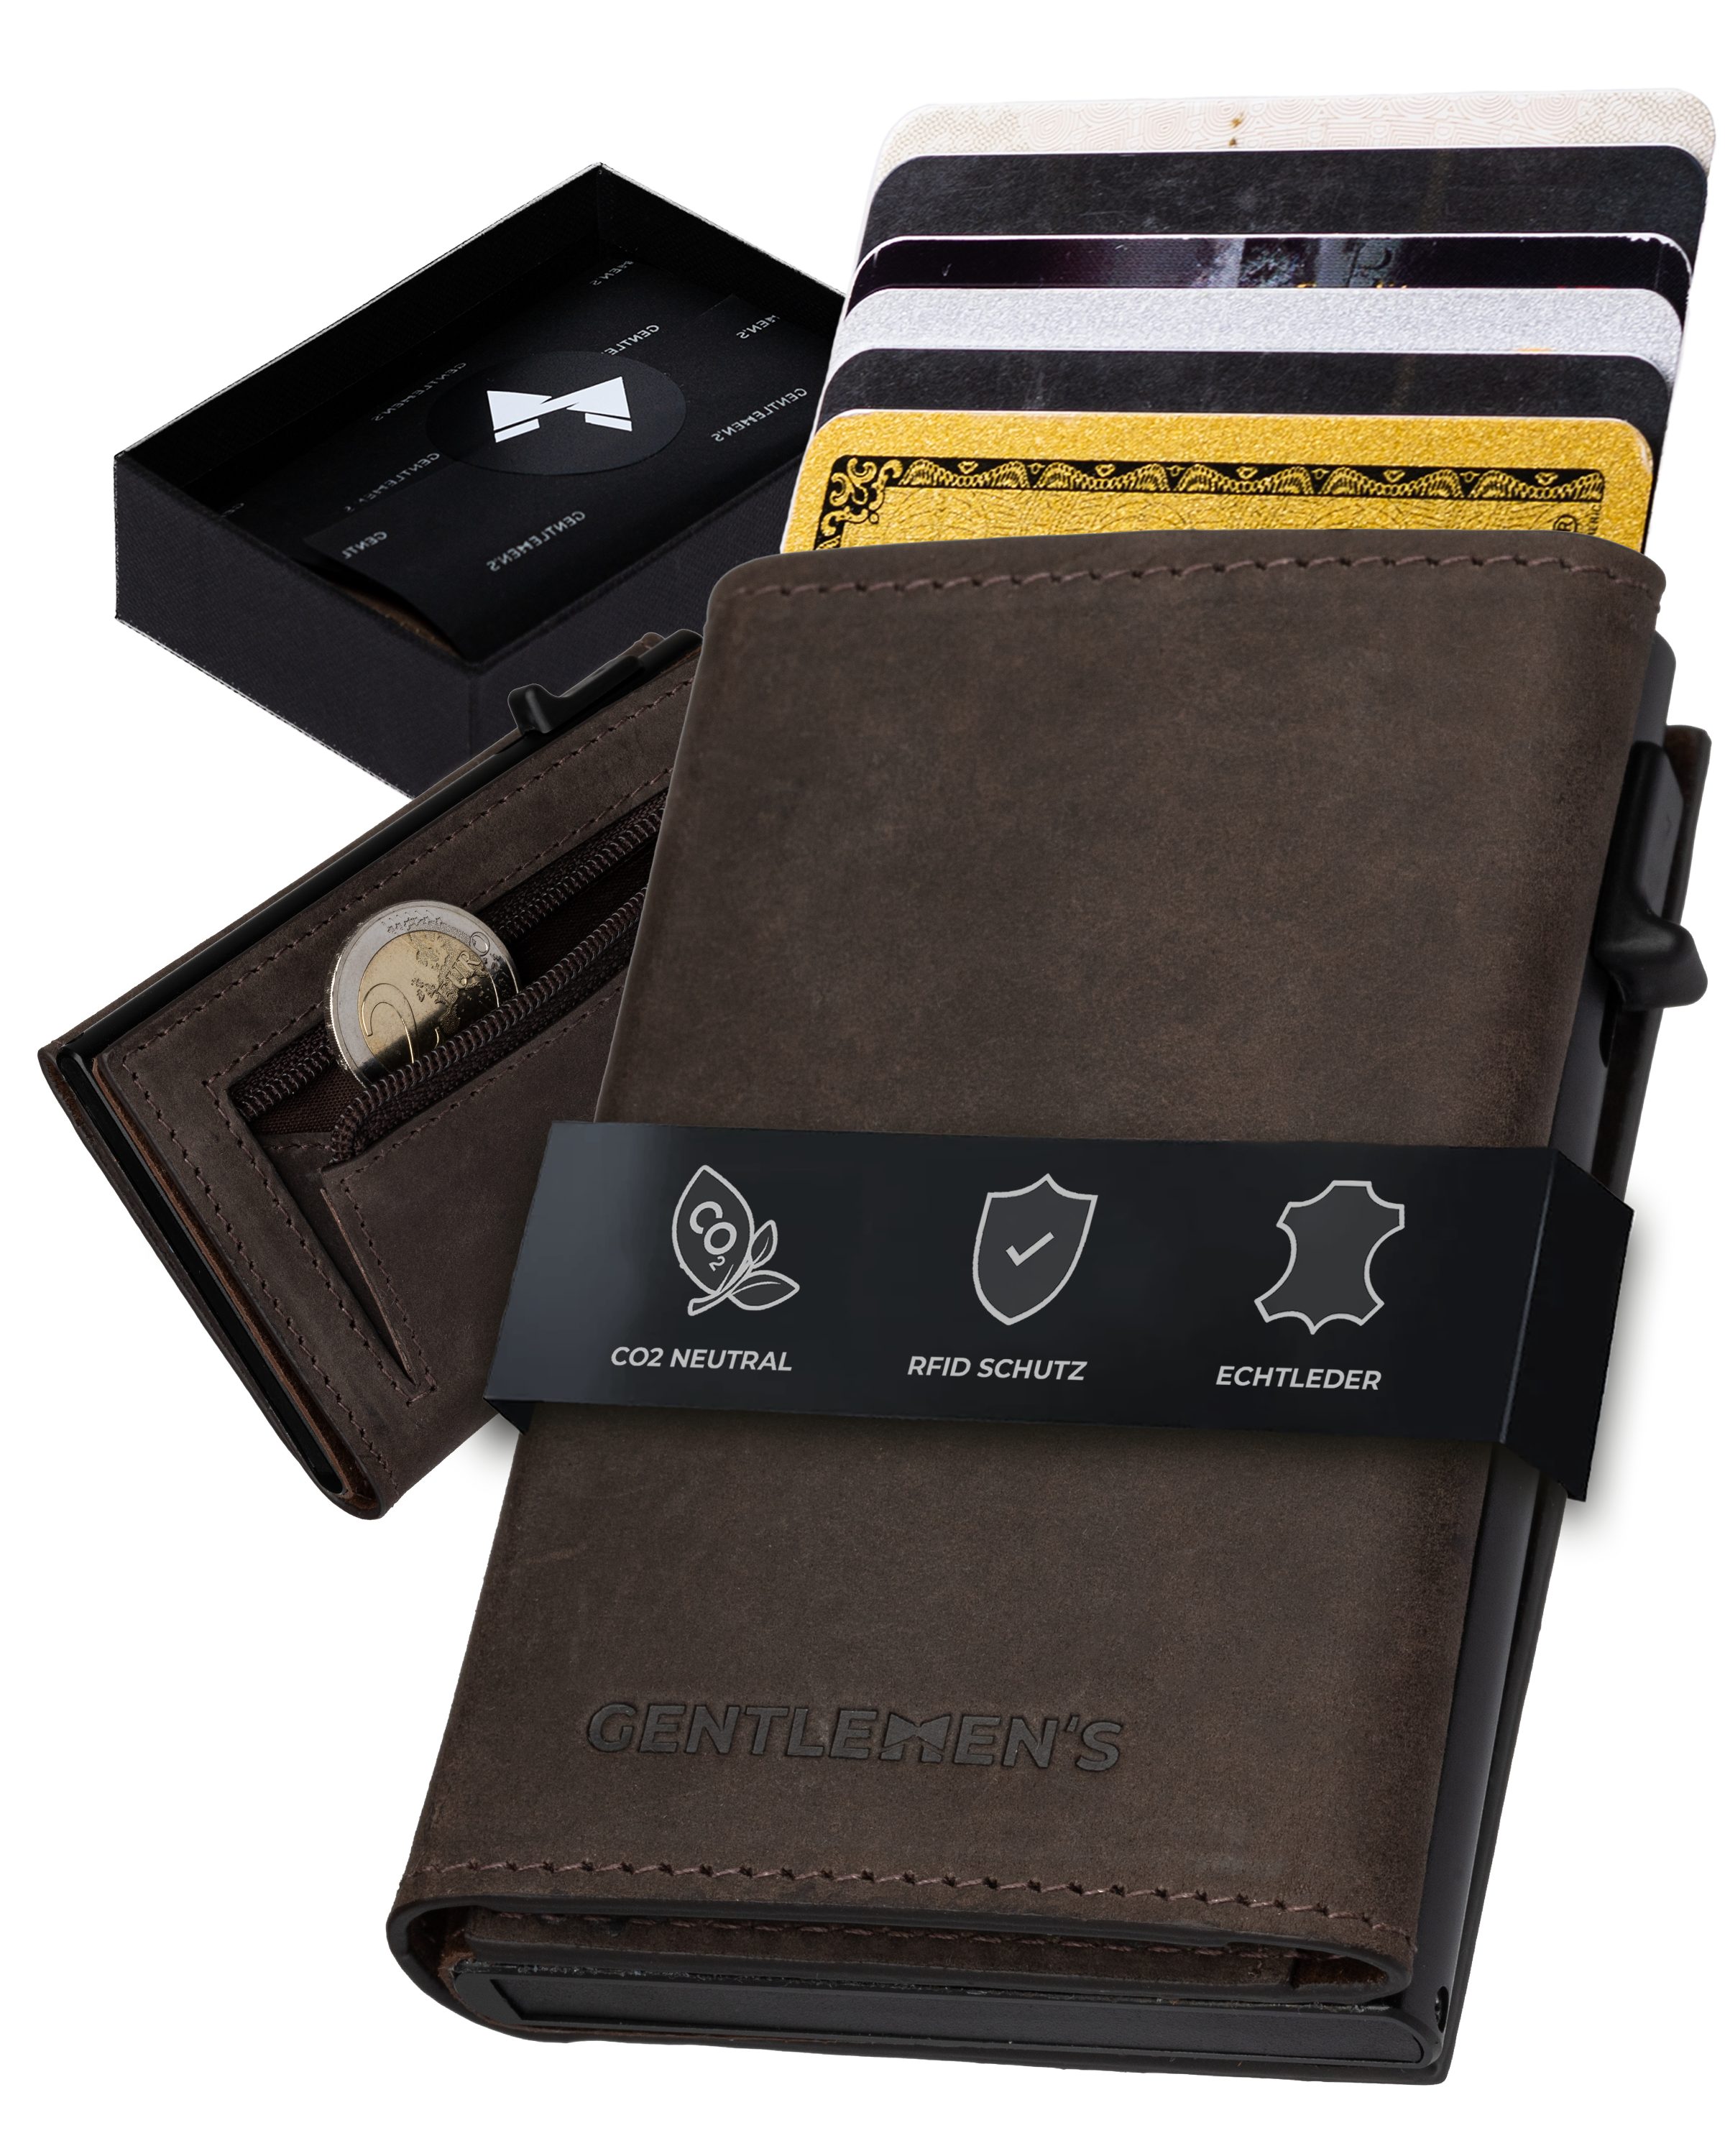 Gentlemen's Geldbörse Cardholder - Kreditkartenetui mit Münzfach & RFID-Schutz Smart Wallet, Kleiner Geldbeutel für Herren - Herren Portemonnaie mit Scheinfach Dunkelbraun